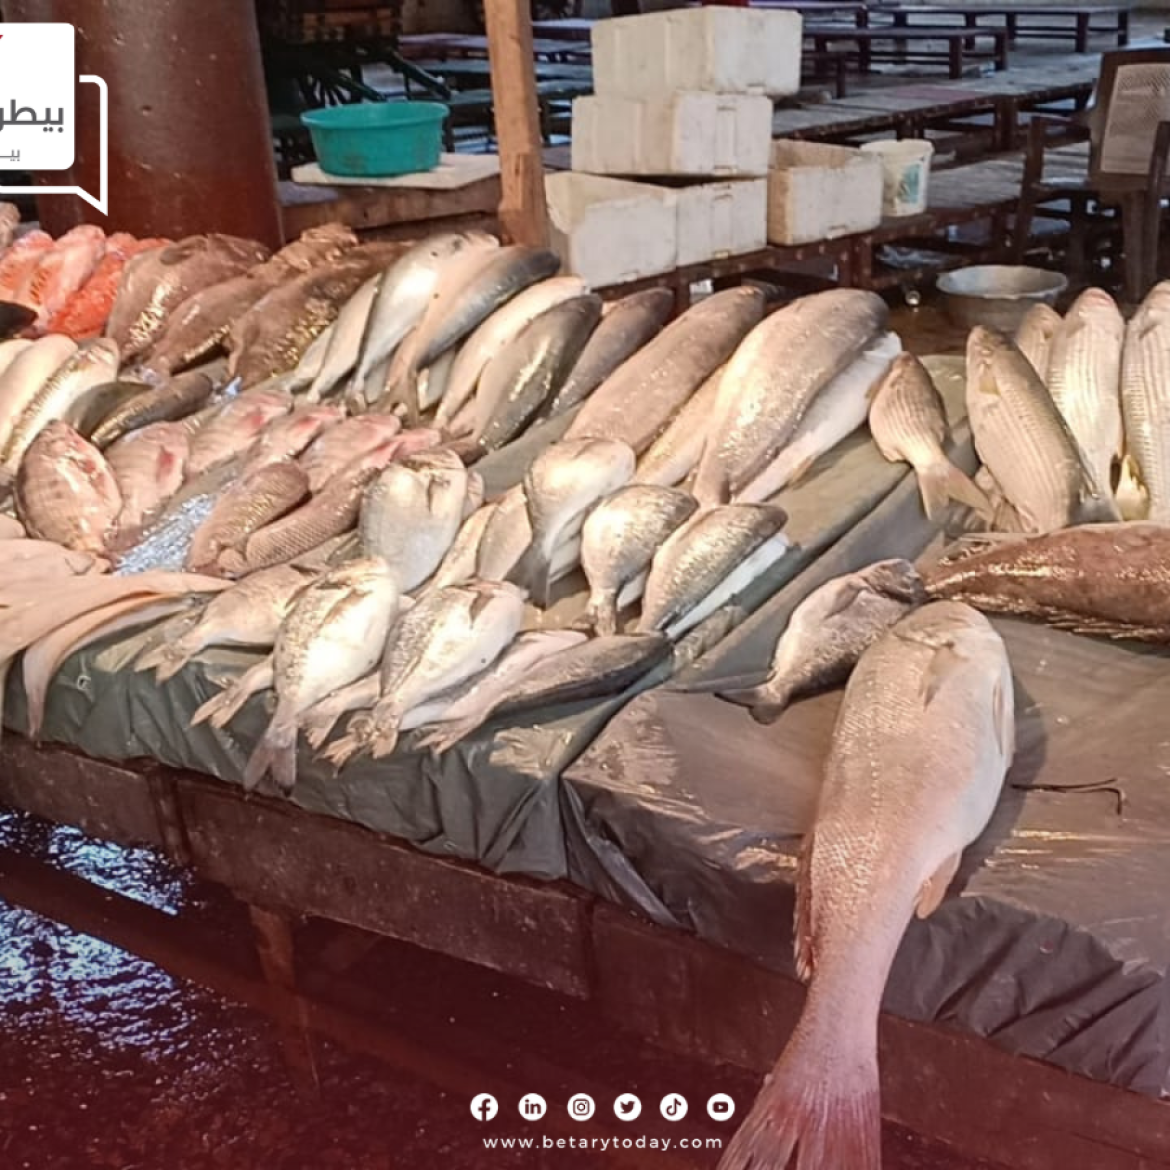 تباين أسعار الأسماك والمأكولات البحرية اليوم الثلاثاء في الأسواق